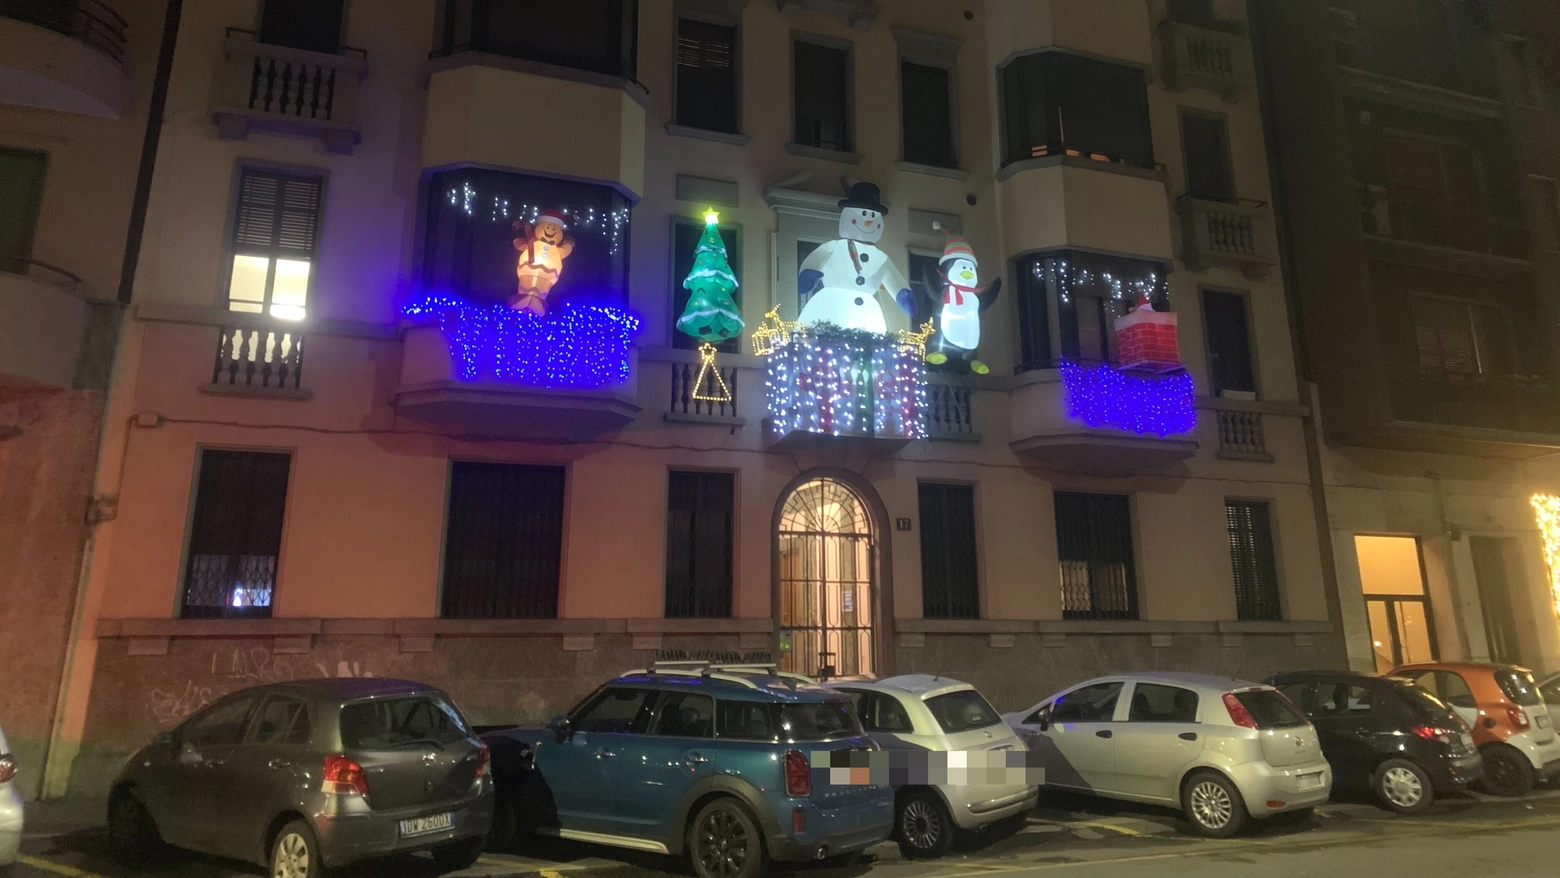 La decorazione natalizia di via Morosini 17 illuminata